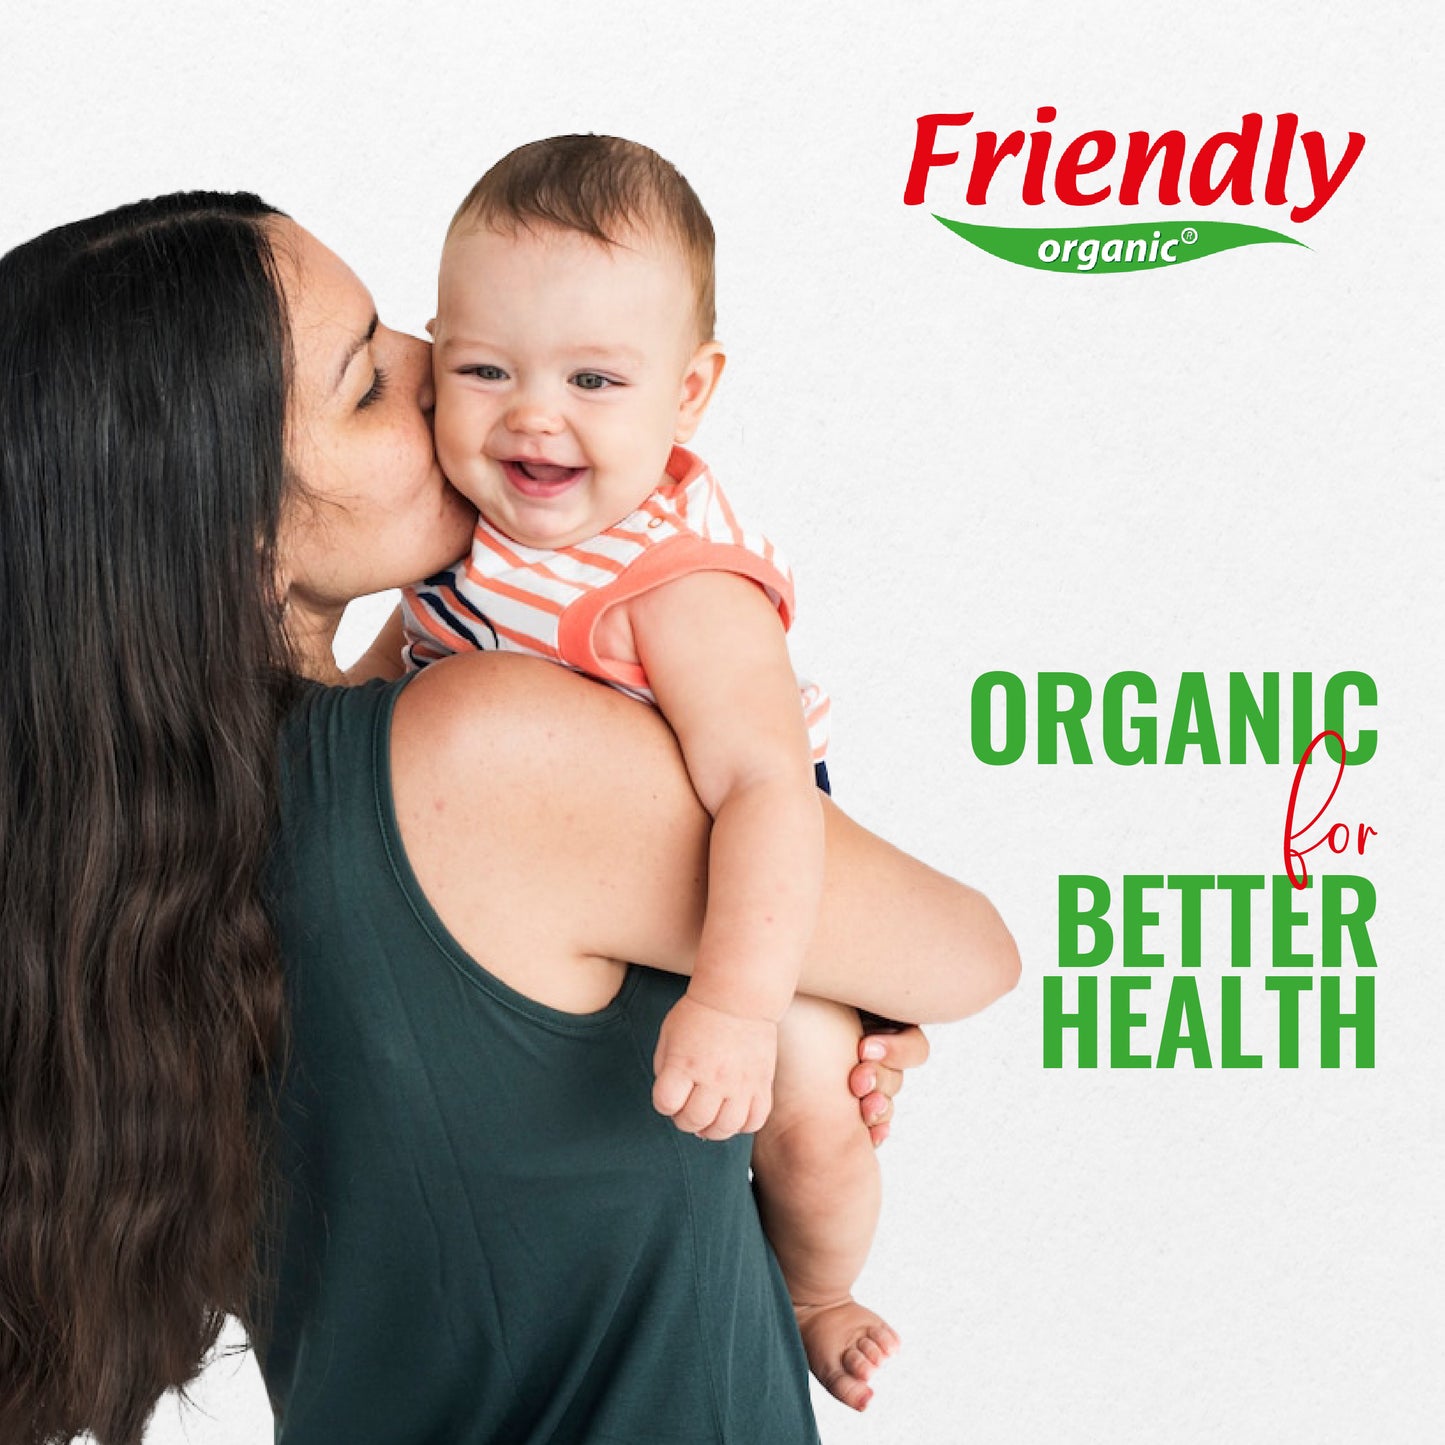 Friendly Organic Fragrance Free Baby Bottle & Feeding Utensil Wash, Clear